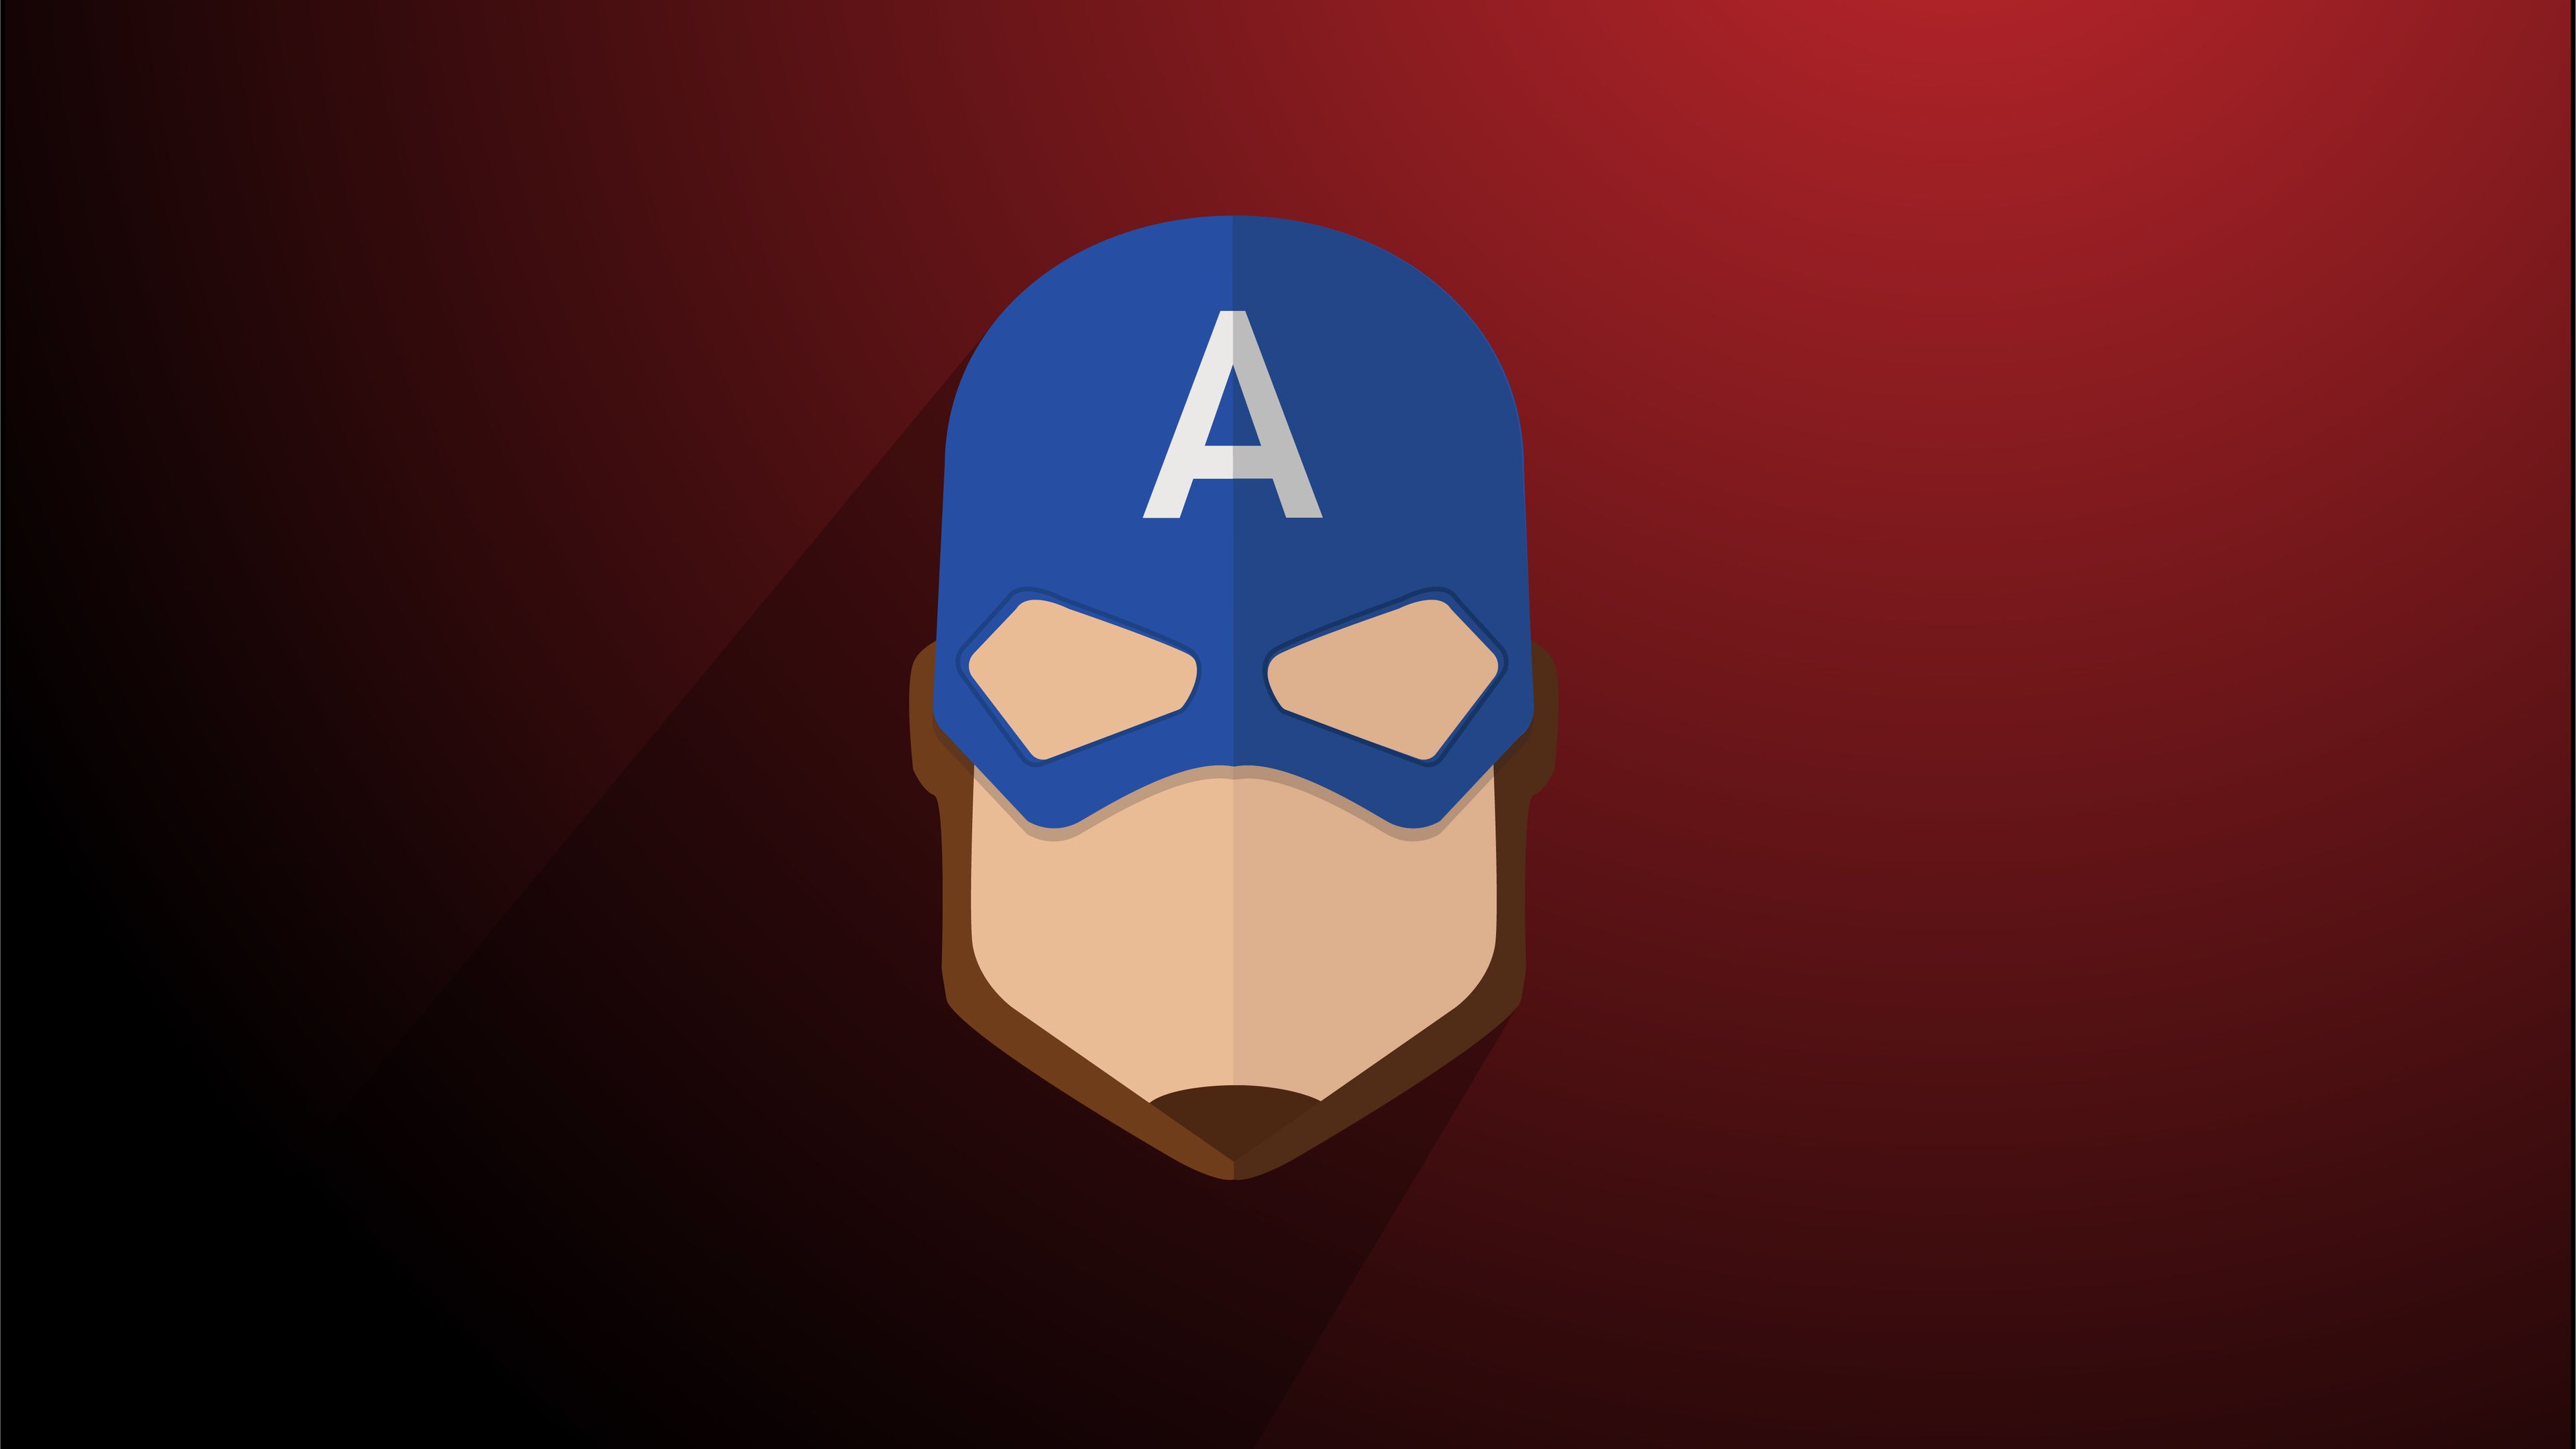 Captain America Minimalist 4k superheroes wallpaper, minimalist wallpaper, minimalism wallpaper. Captain america wallpaper, Marvel wallpaper, Avengers painting